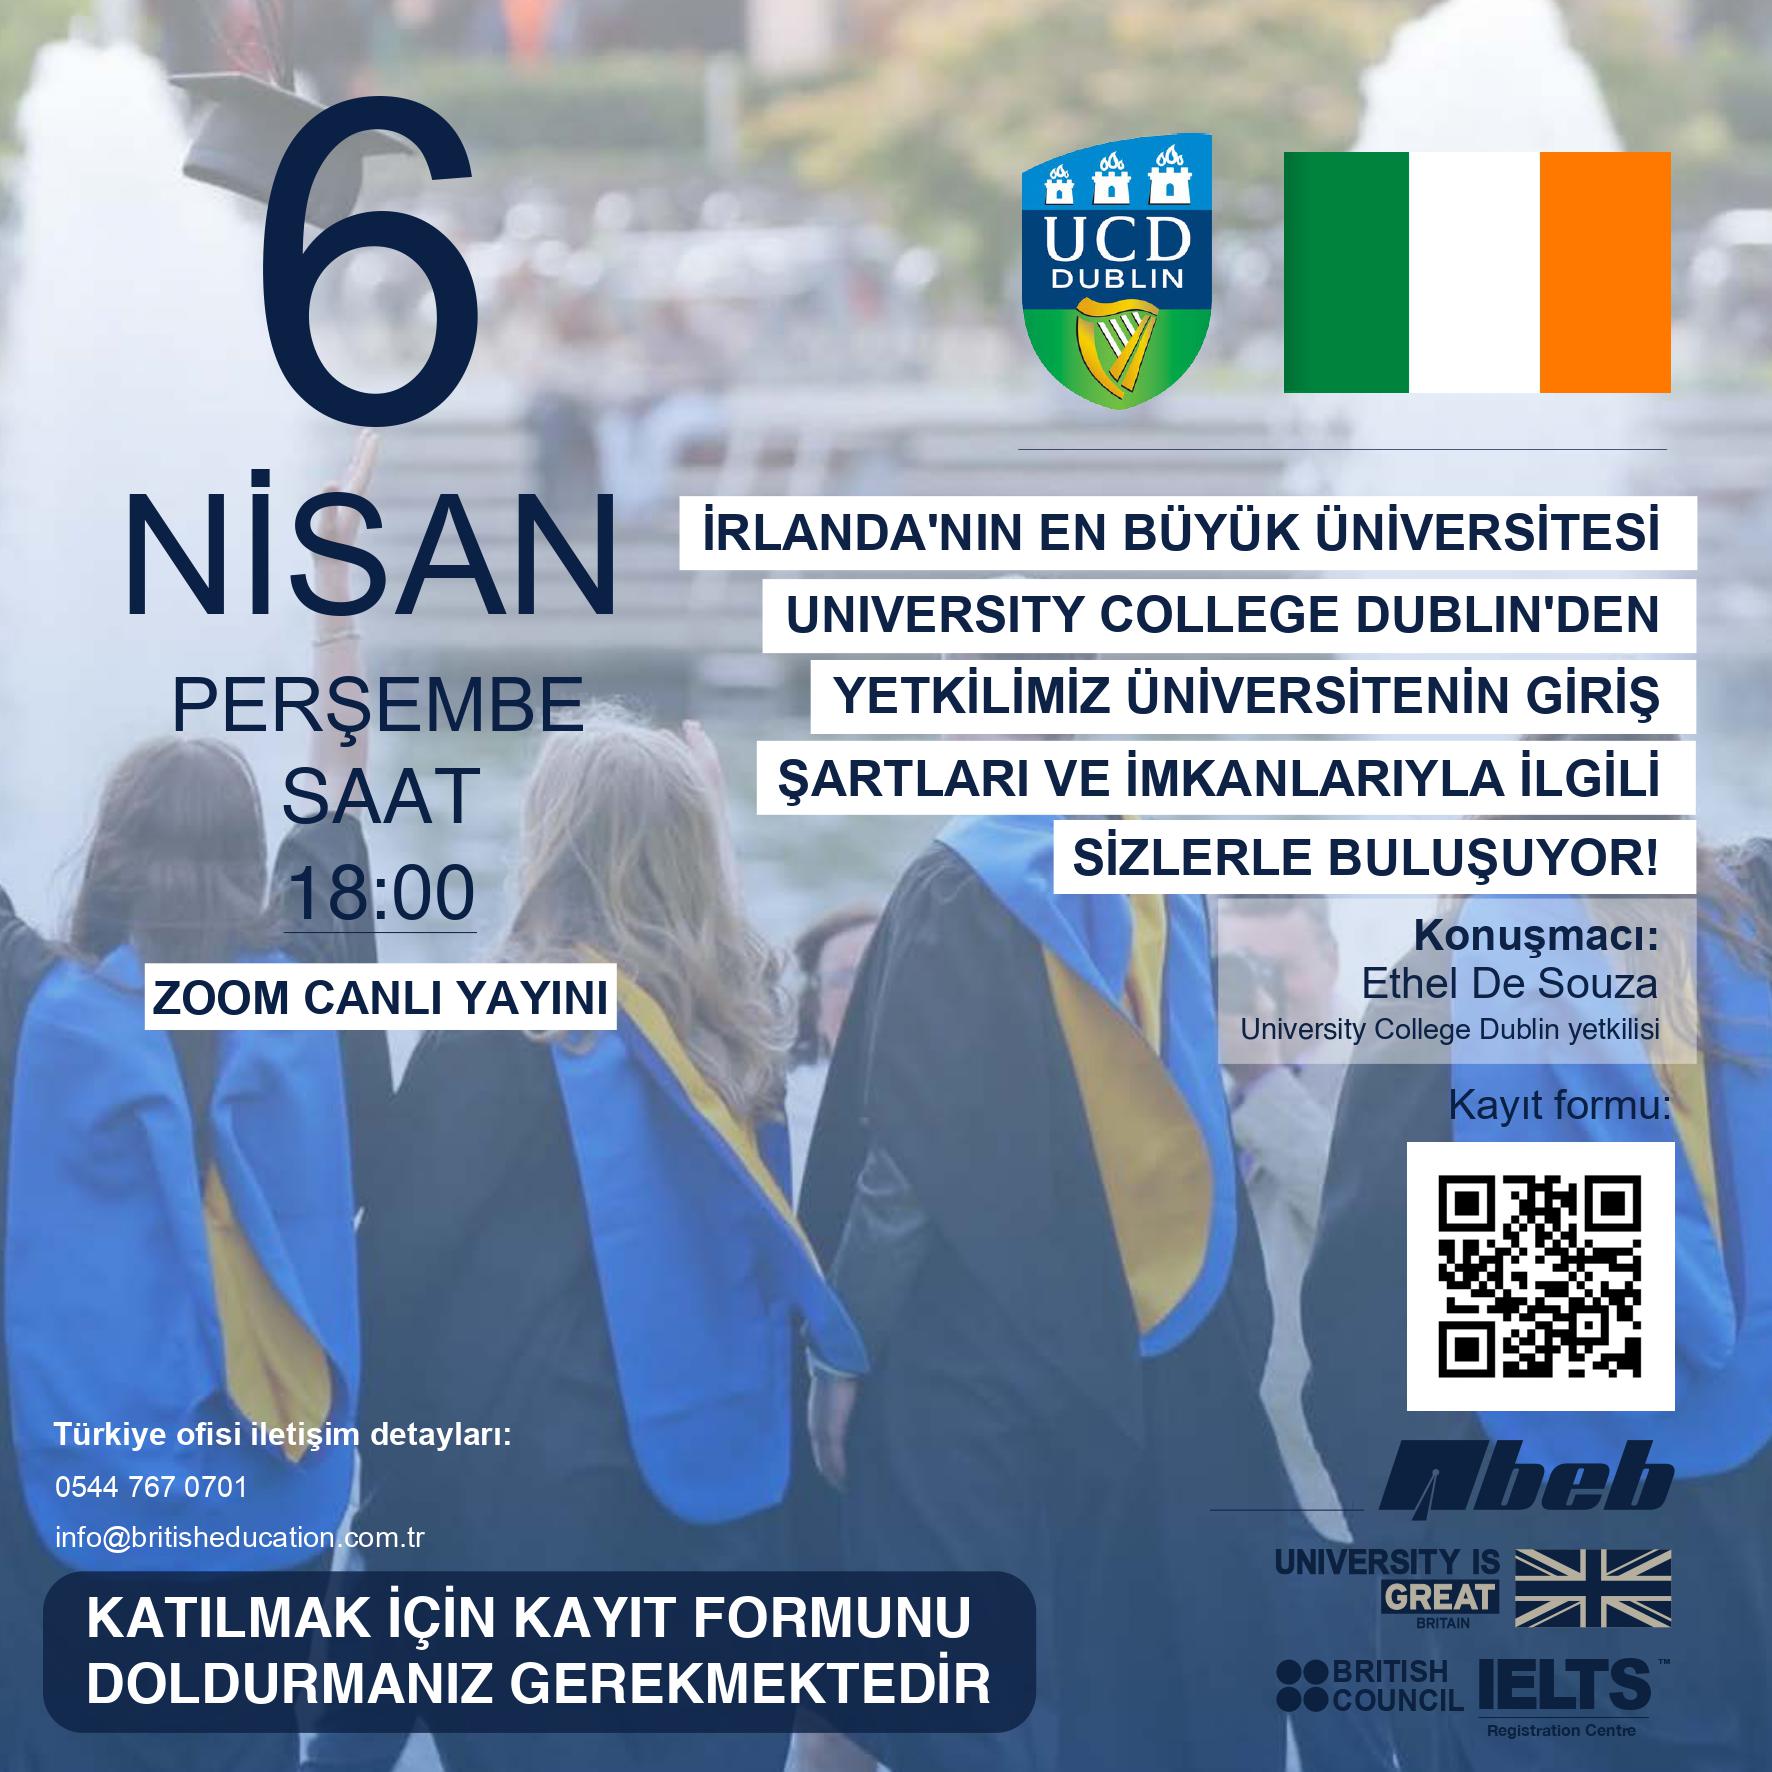 Dünyanın en iyi 2 İrlanda Üniversitesinden biri konumundaki University College Dublin hakkında düzenlenecek webinar yayınının davetiyesi ve davetiye görselinde yer alan etkinlik detayları ile Üniversitenin mezun öğrencileri